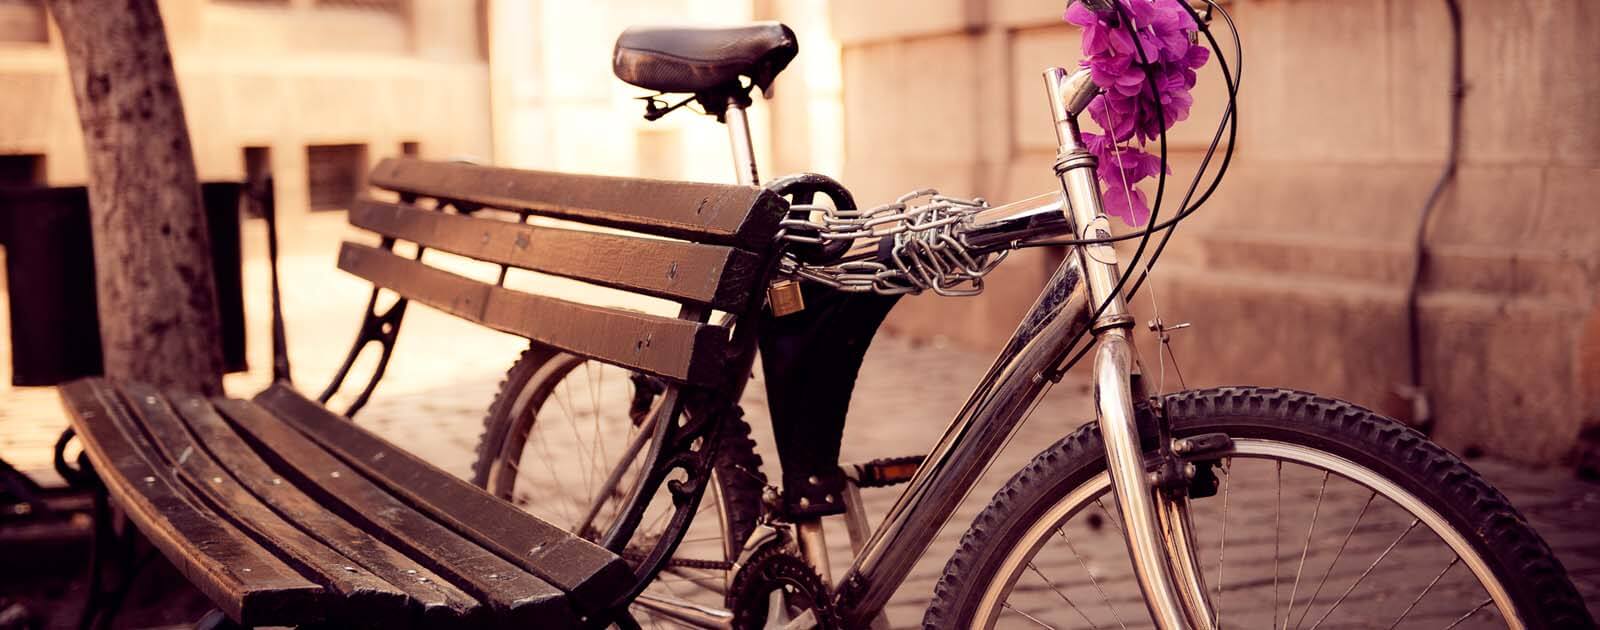 Beruf und Freizeit | Fahrraddiebstahl | Titelbild